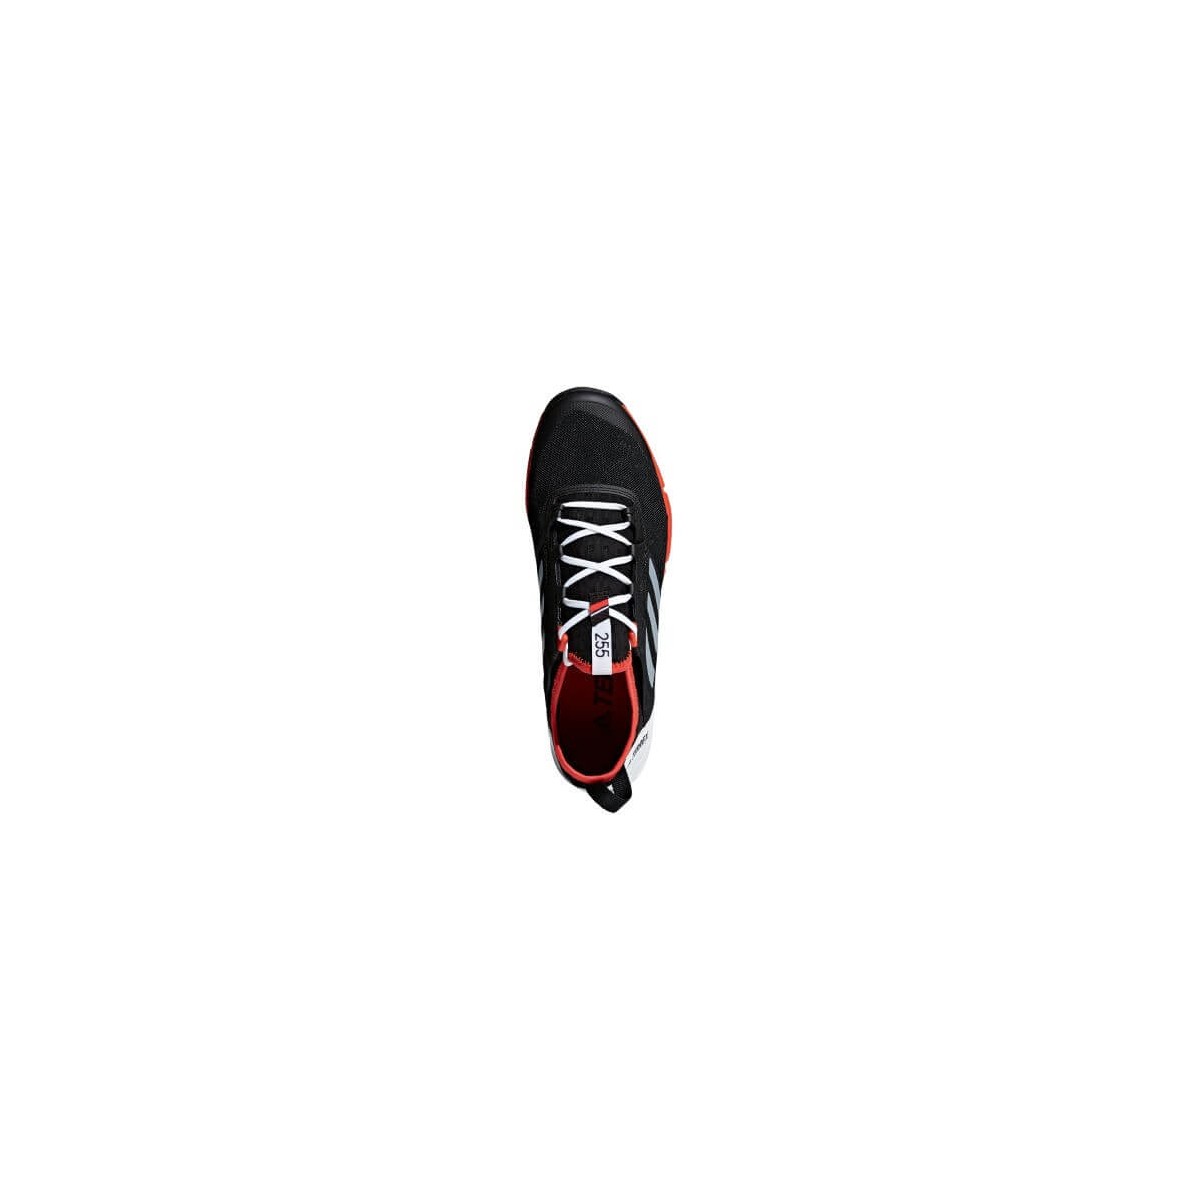 Adidas Agravic Speed Negro/Blanco OI18